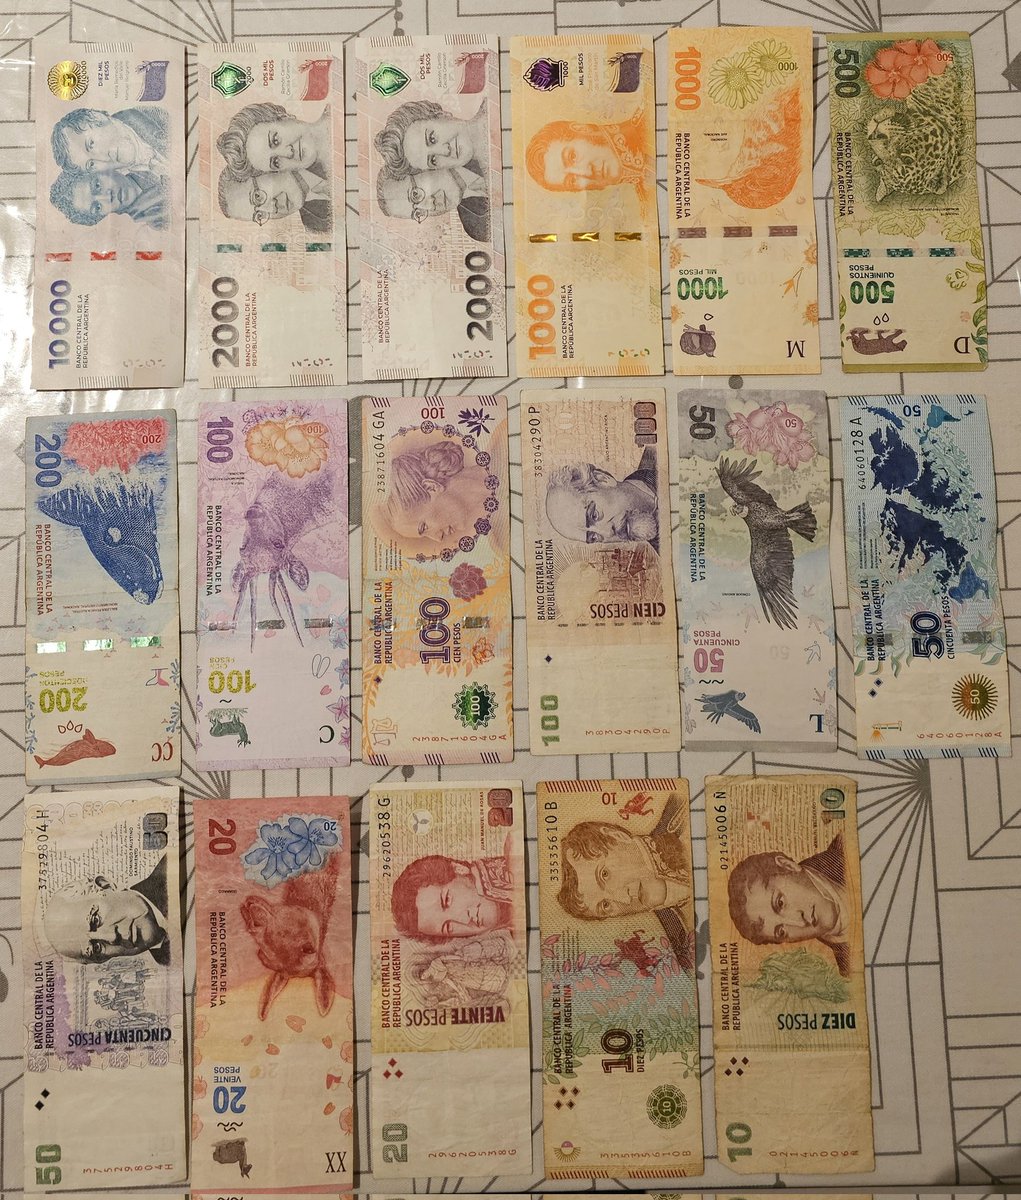 Estos son todos los billetes de curso legal circulantes en Argentina hoy. Una locura la cantidad no solo de denominaciones sino tambien de variedad del mismo billete. Complejo para la gente grande, extranjeros, para todos en general